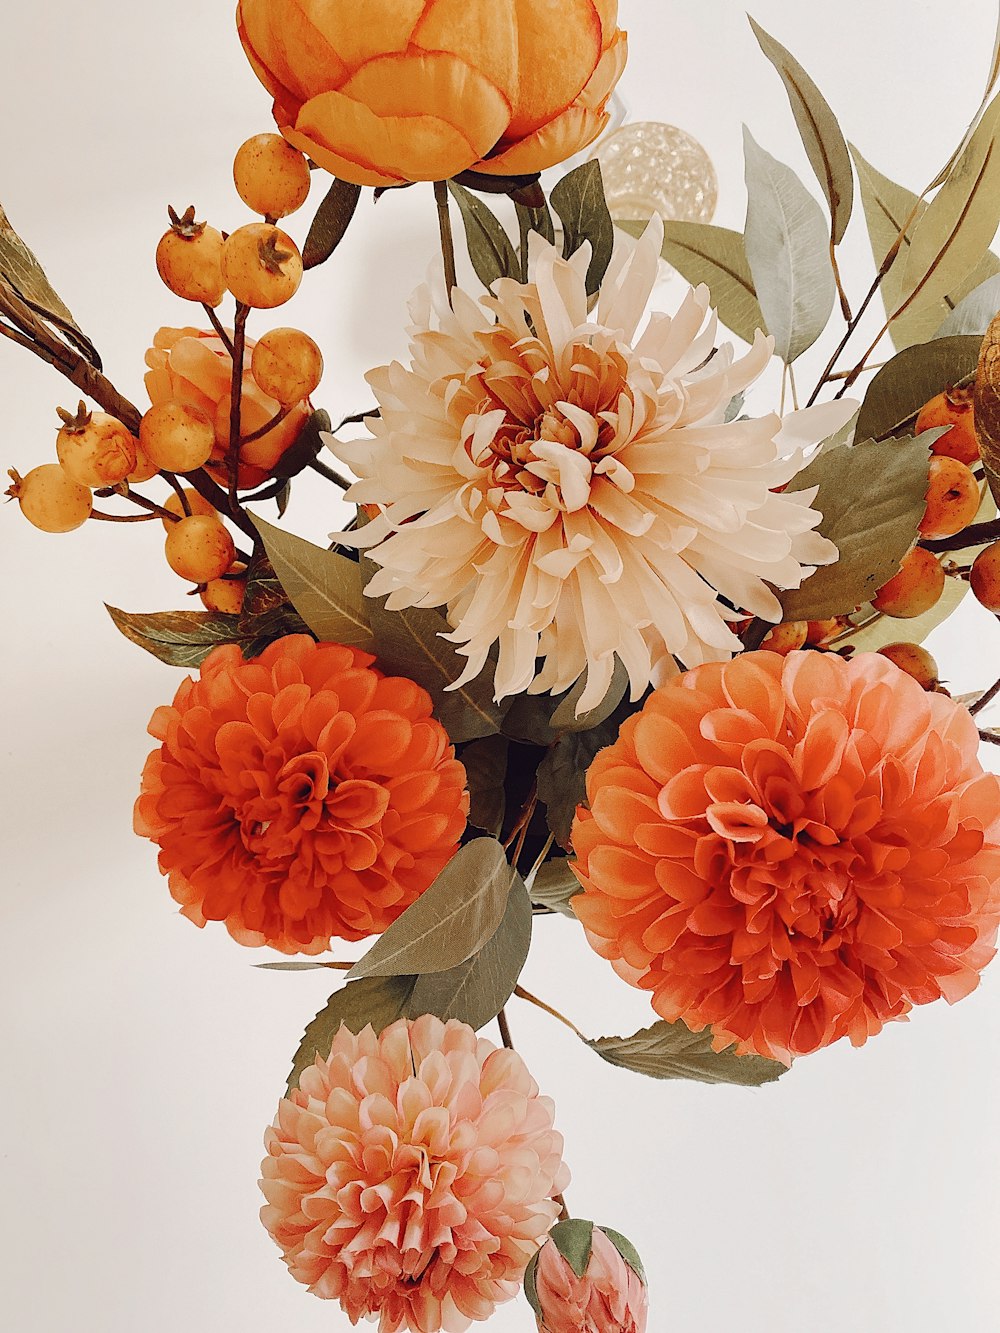 um vaso cheio de muitas flores laranja e branca